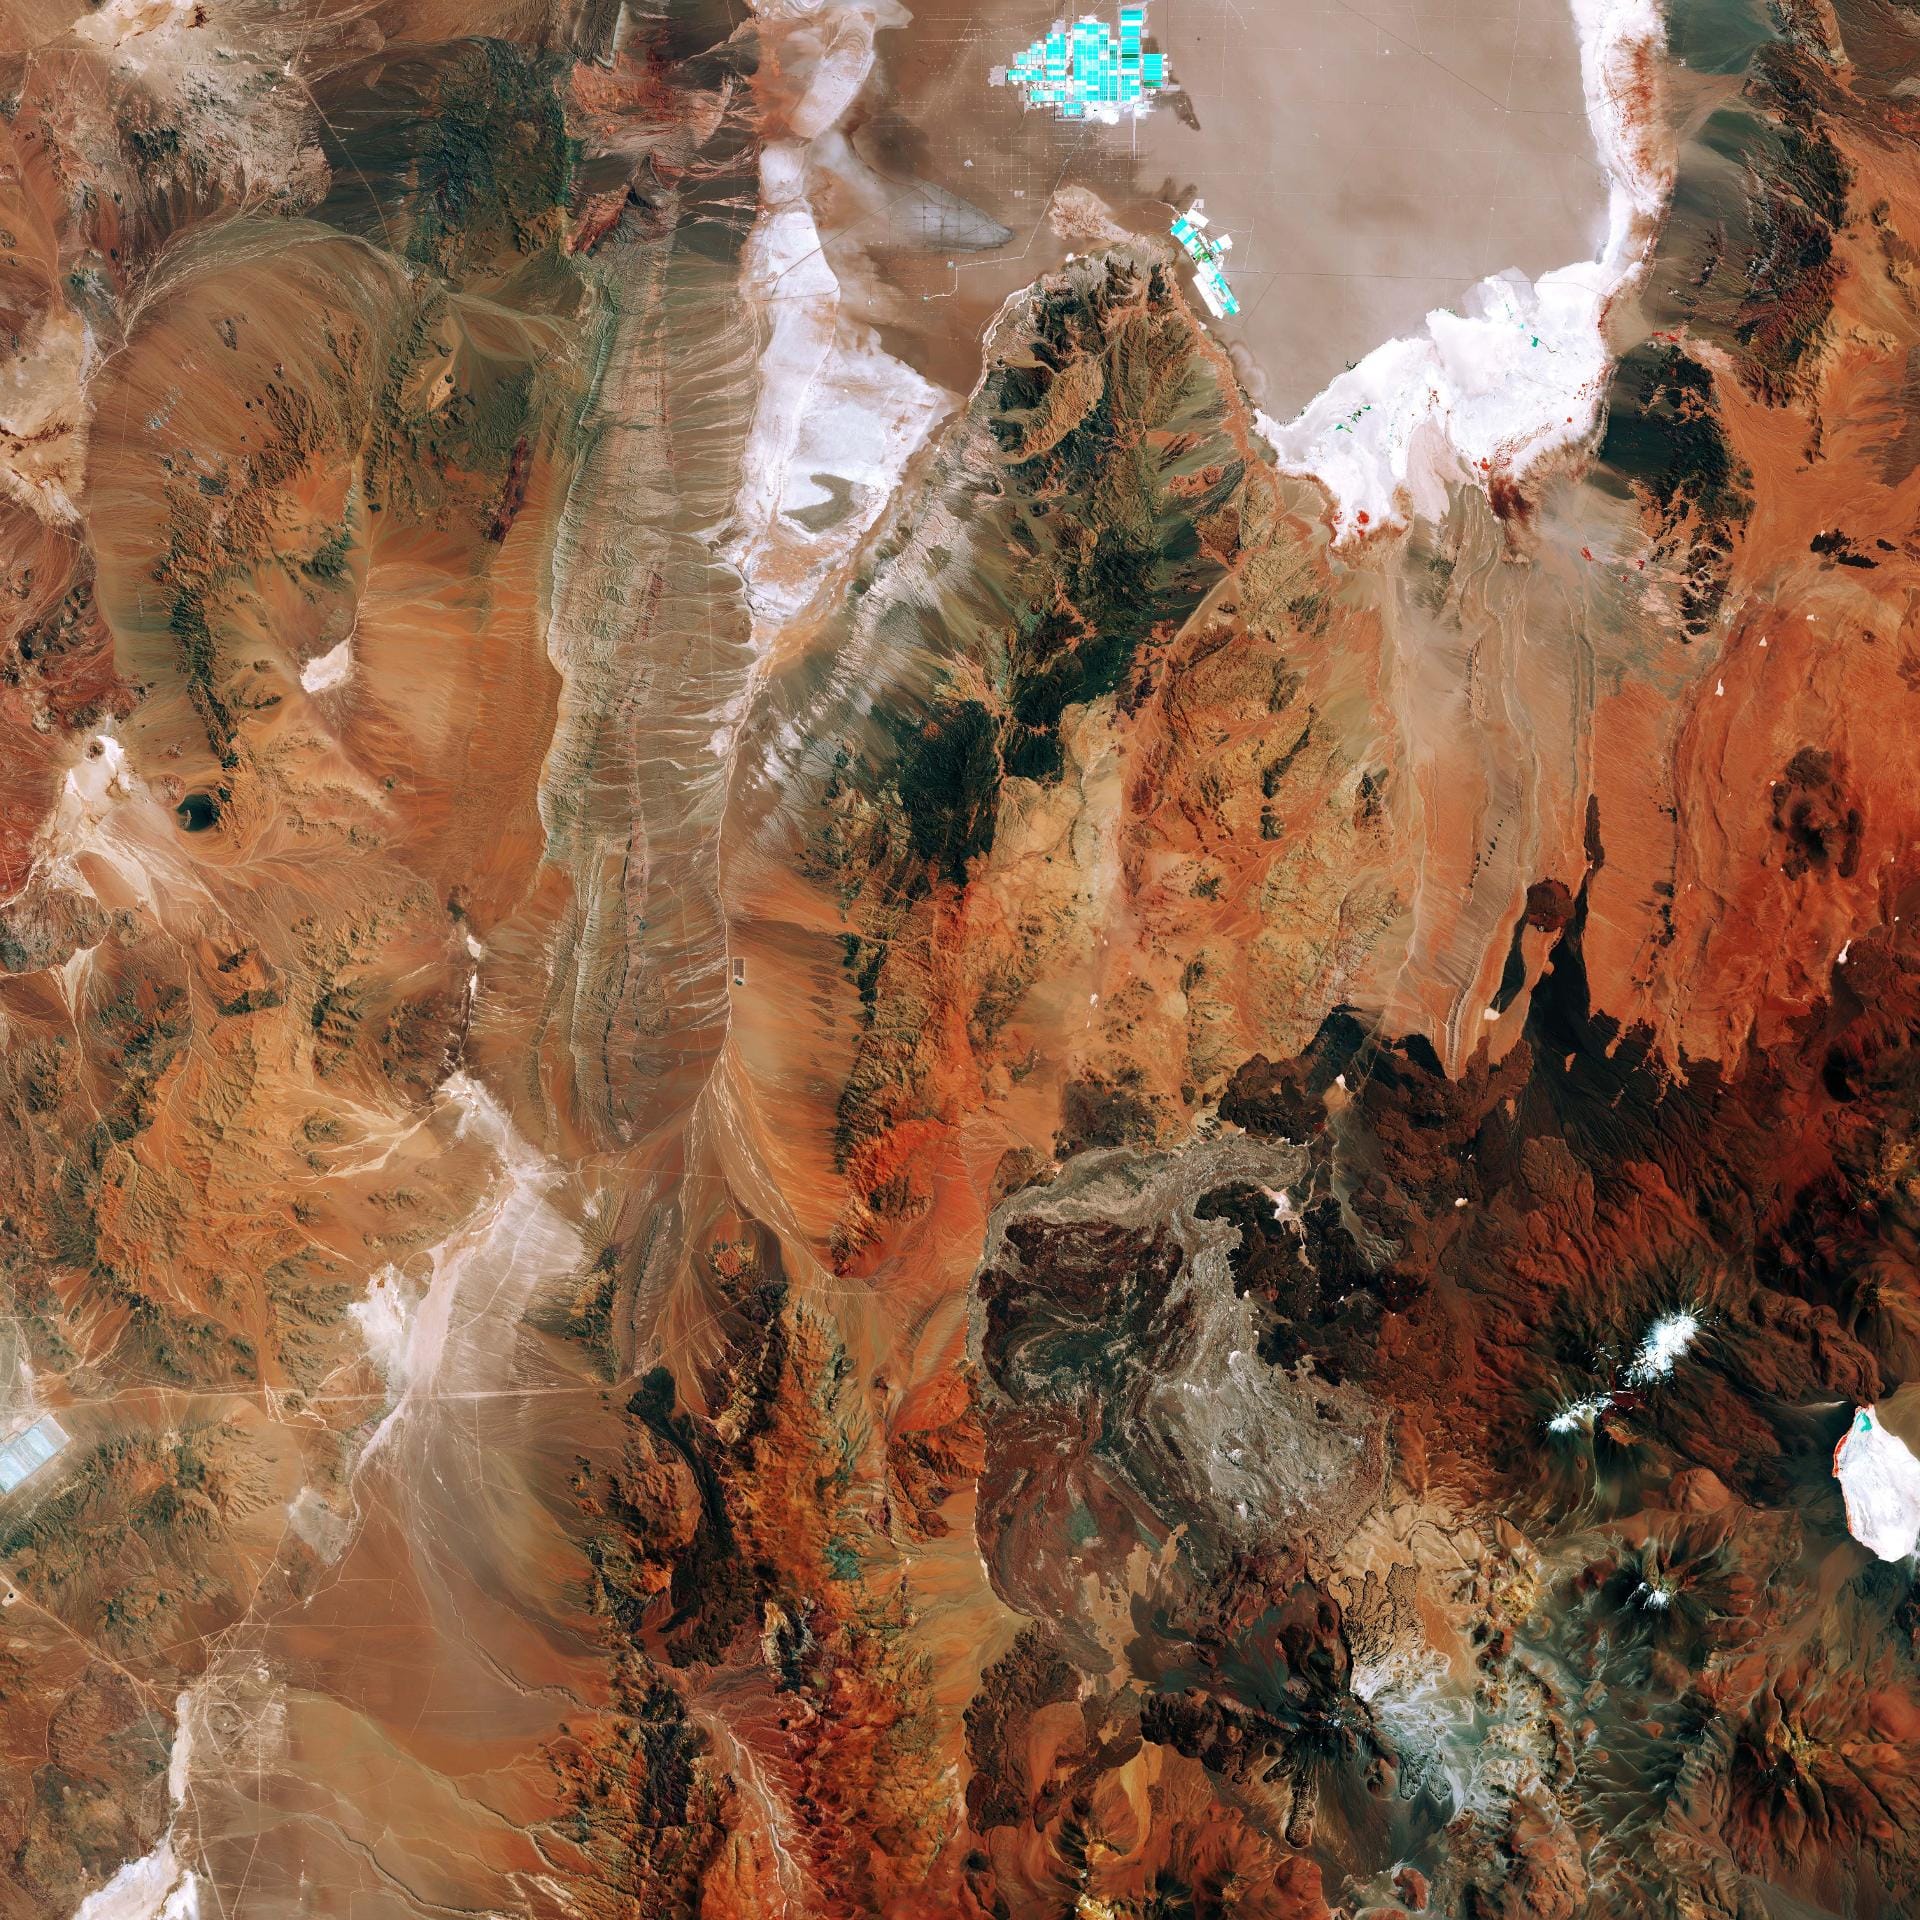 Das Satellitenbild zeigt die östliche Atacama-Wüste in Chile. In dem Gebiet 200 km östlich der Stadt Antofagasta gibt es kaum Vegetation. Es ist eine der trockensten und einsamsten Landschaften der Erde. Oben im Bild ist der Salar de Atacama, ein Salzwassersee, der als Binnengewässer keinen Abfluss zum Ozean hat, zu sehen. Der See ist die weltgrößte und reinste aktive Quelle von Lithium.